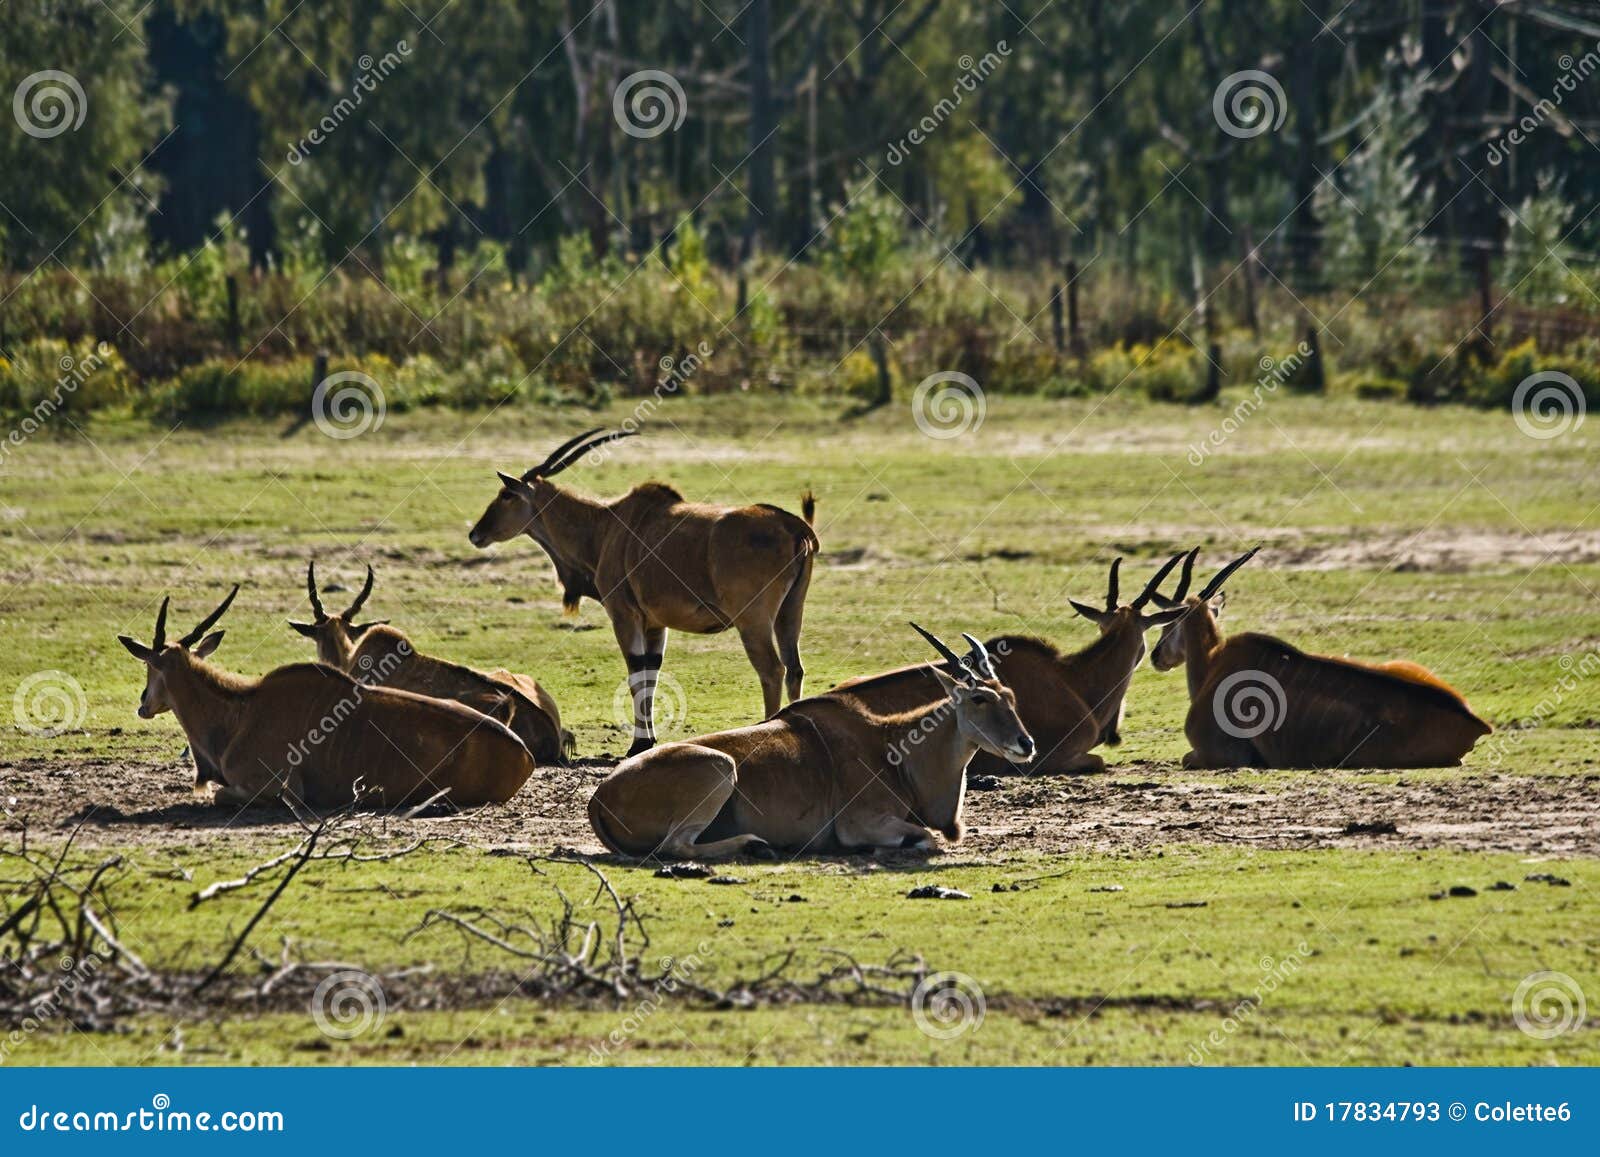 eland antelope or common eland